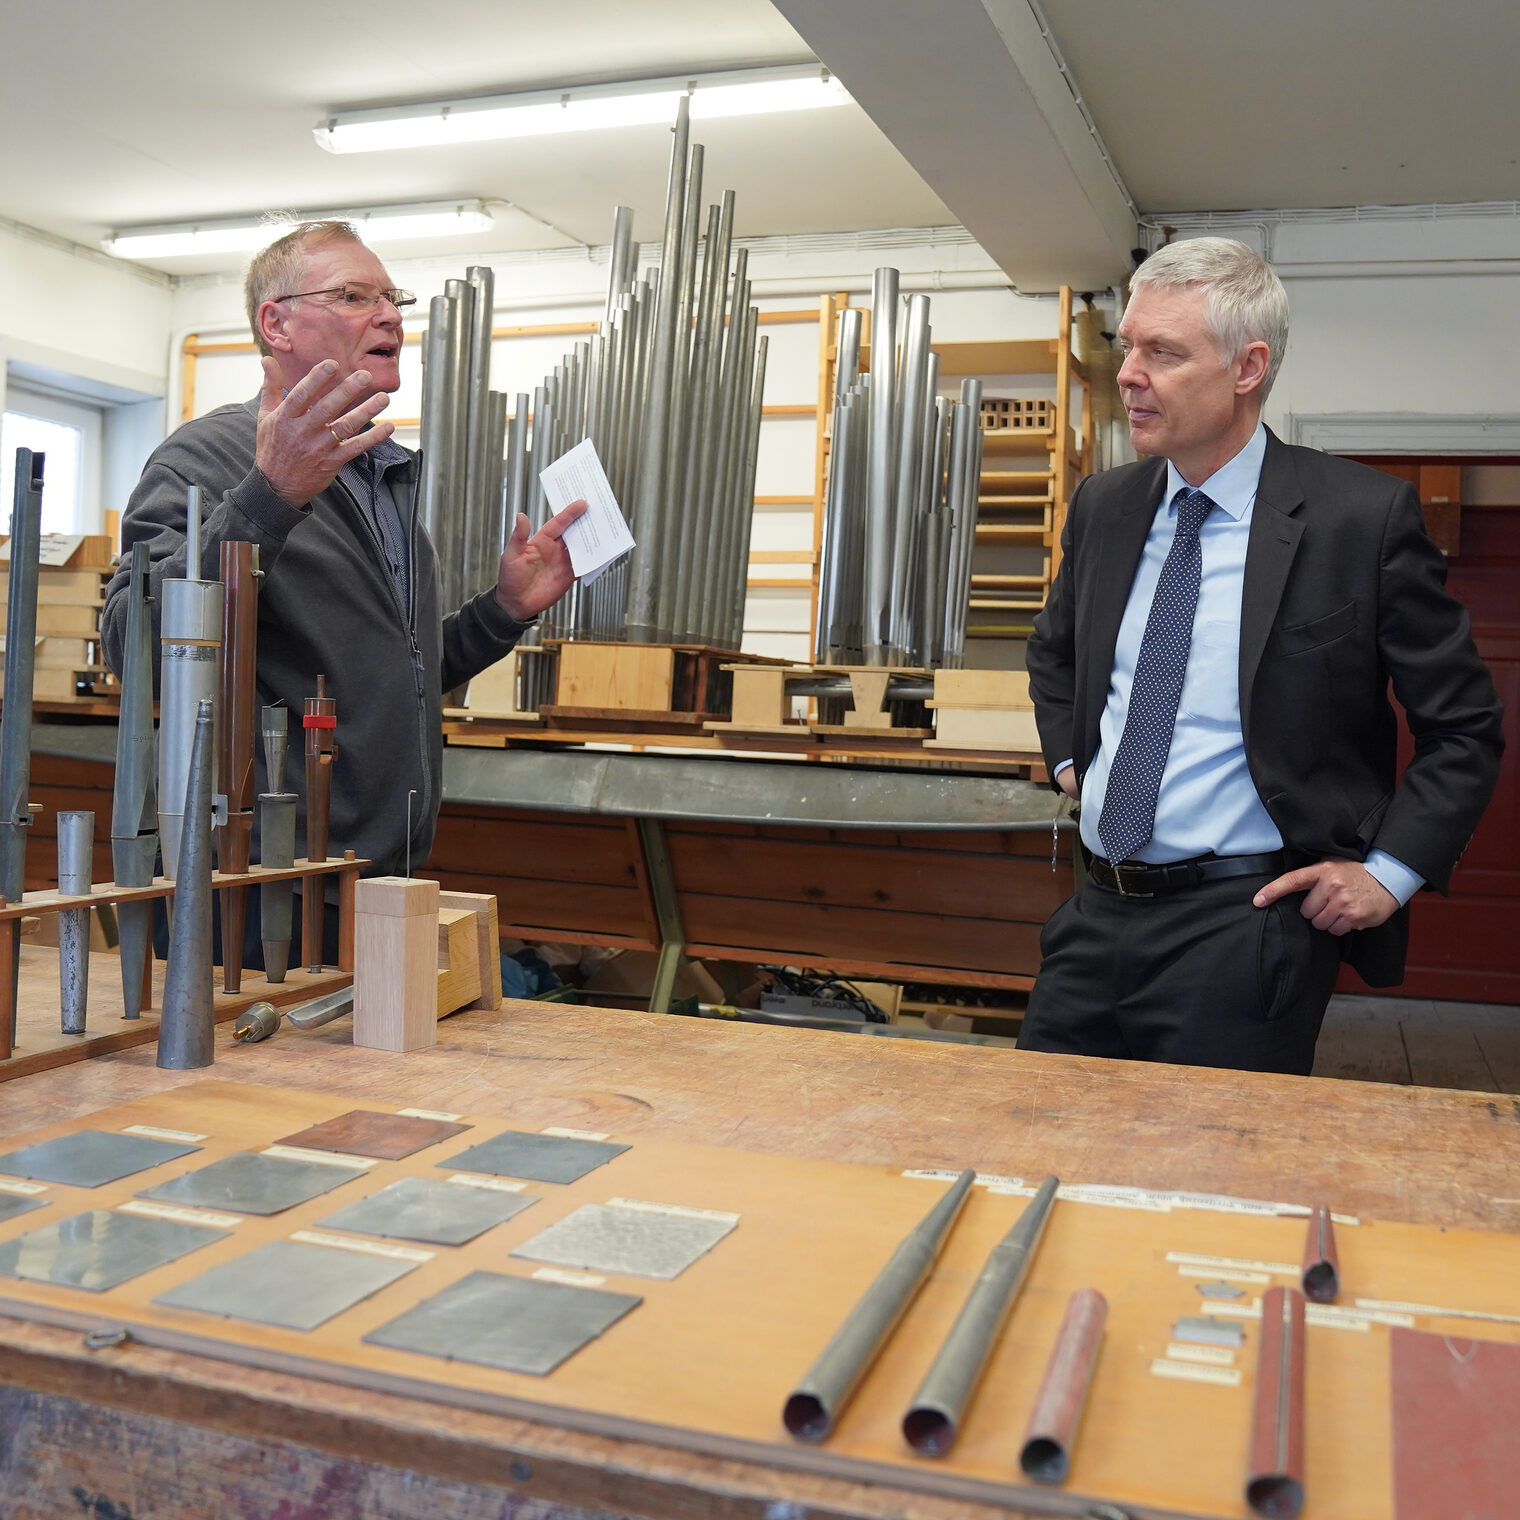 In Lich besuchte Kultusstaatssekretär Dr. Manuel Lösel die Förster & Nicolaus GmbH & Co. KG, hier ein Bild in der Werkstatt. 